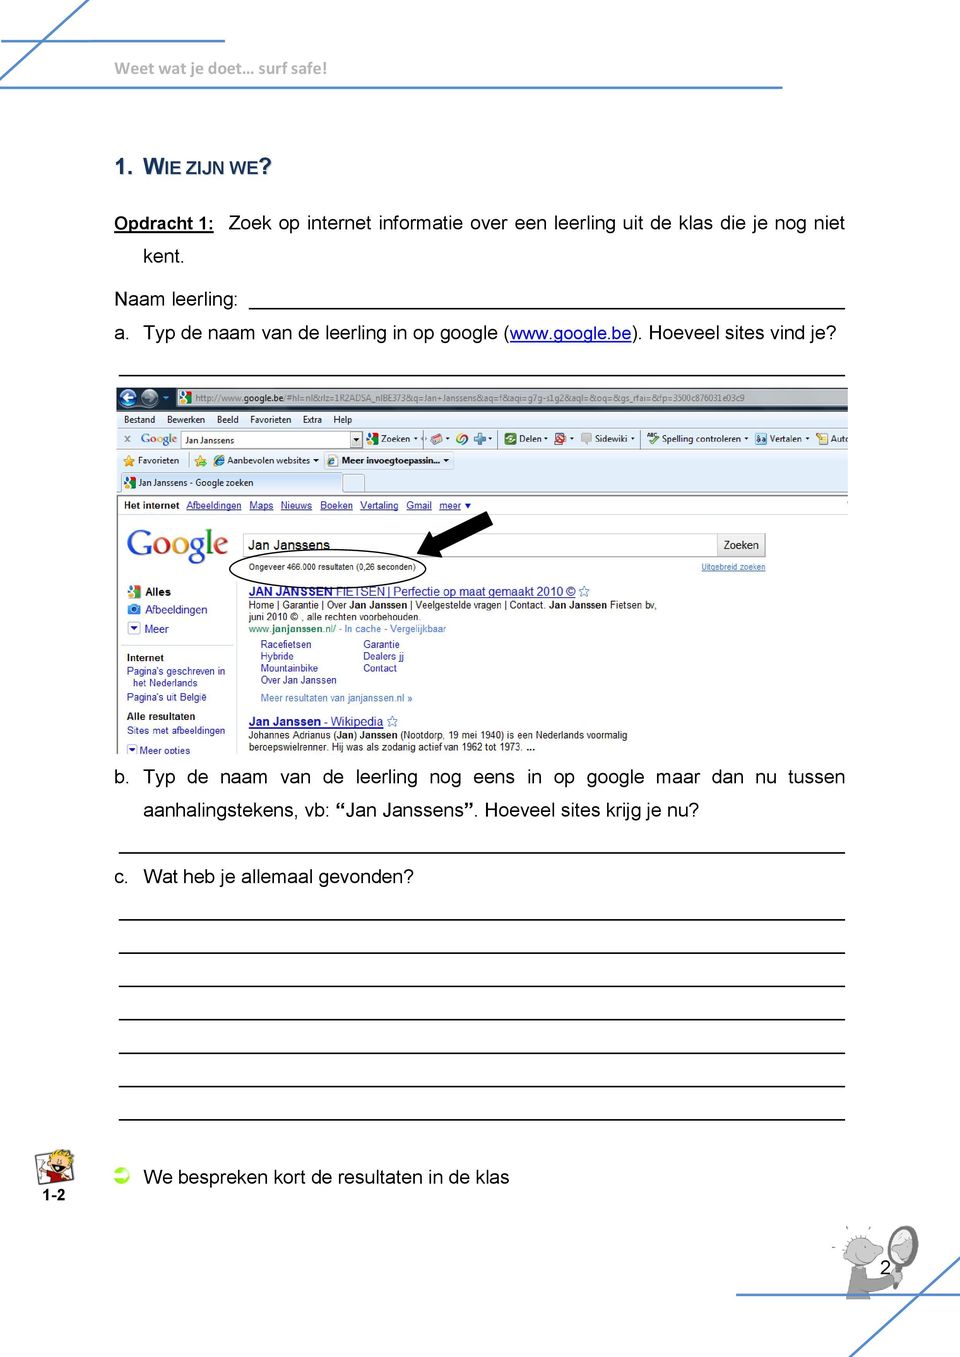 Naam leerling: a. Typ de naam van de leerling in op google (www.google.be). Hoeveel sites vind je? b.